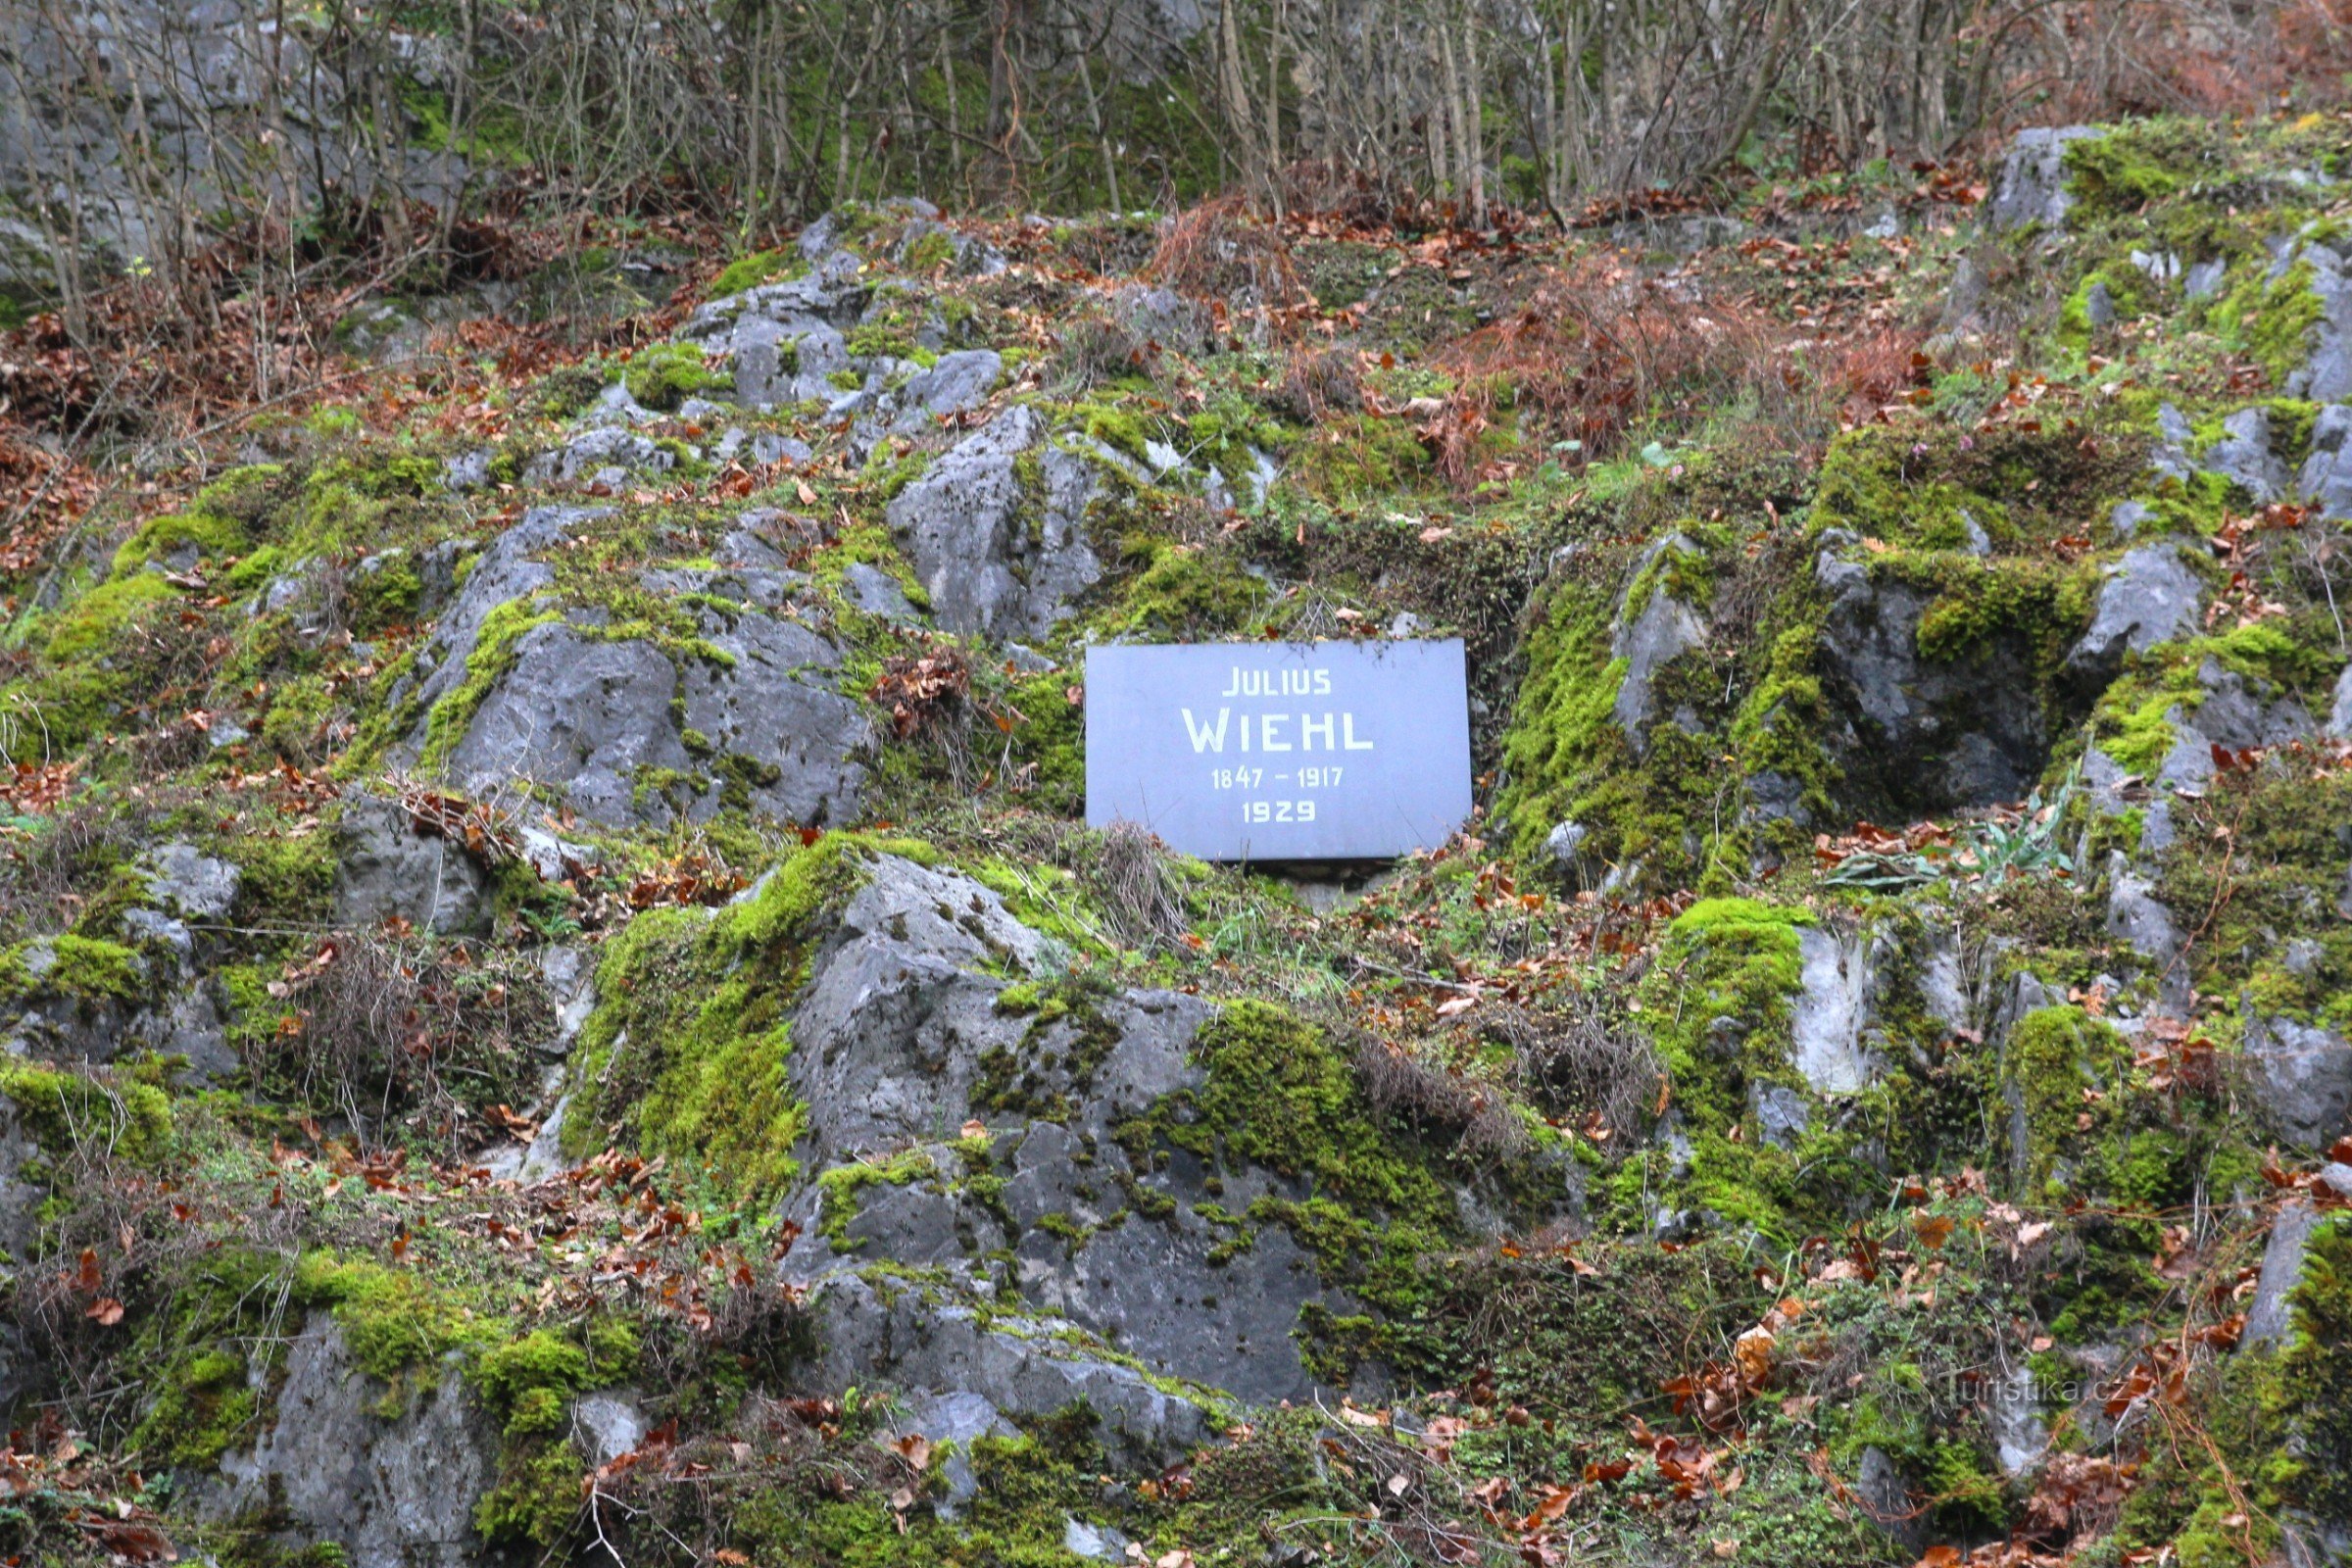 Spominska plošča se nahaja v kamnitem pobočju pod starim kmečkim logom